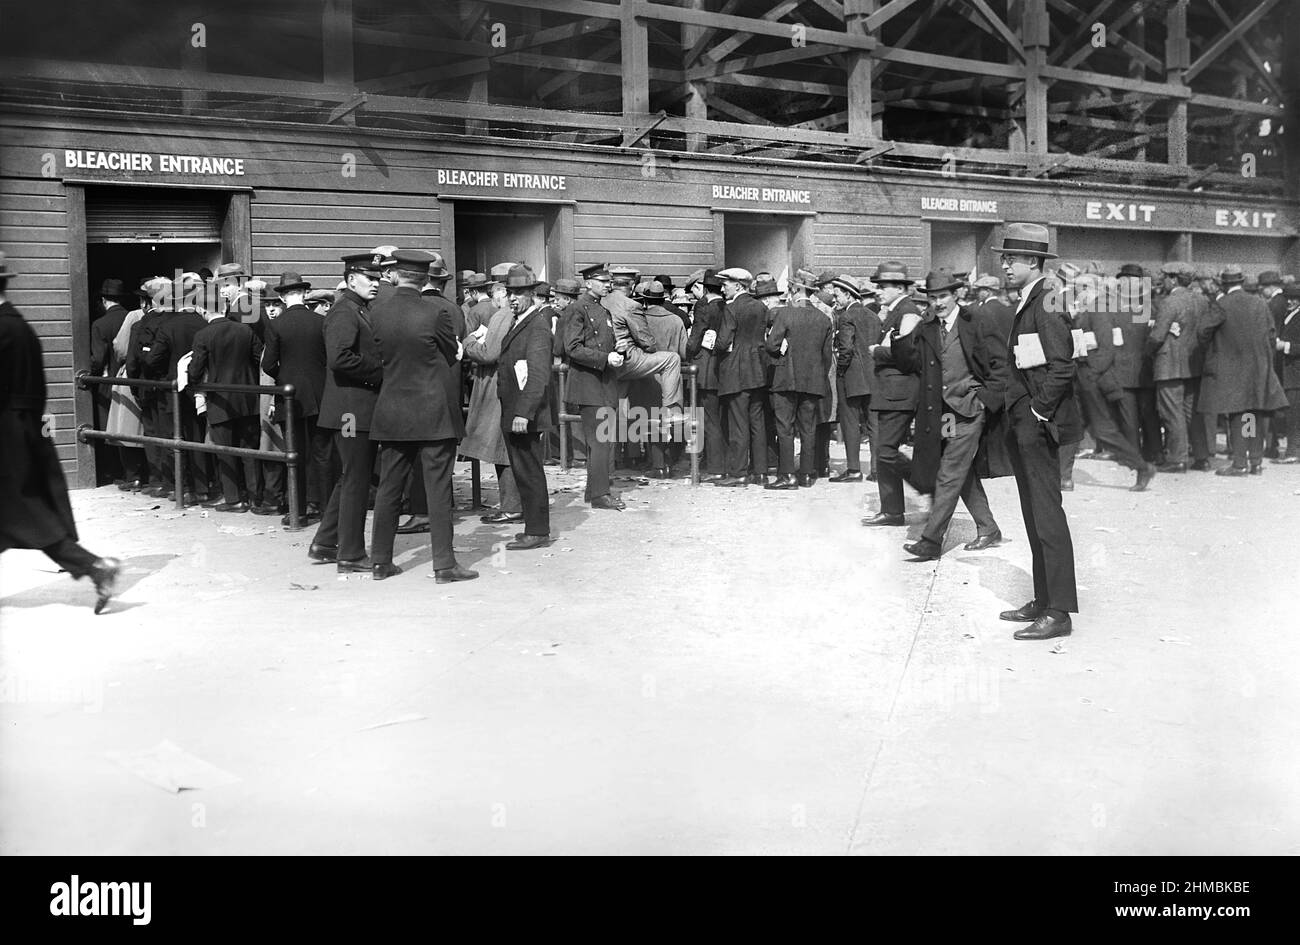 Die Fans haben sich für Bleacher-Sitze zu World Series Game 1, Yankee Stadium, Bronx, New York, USA, Bain News Service, Oktober 1923 Stockfoto